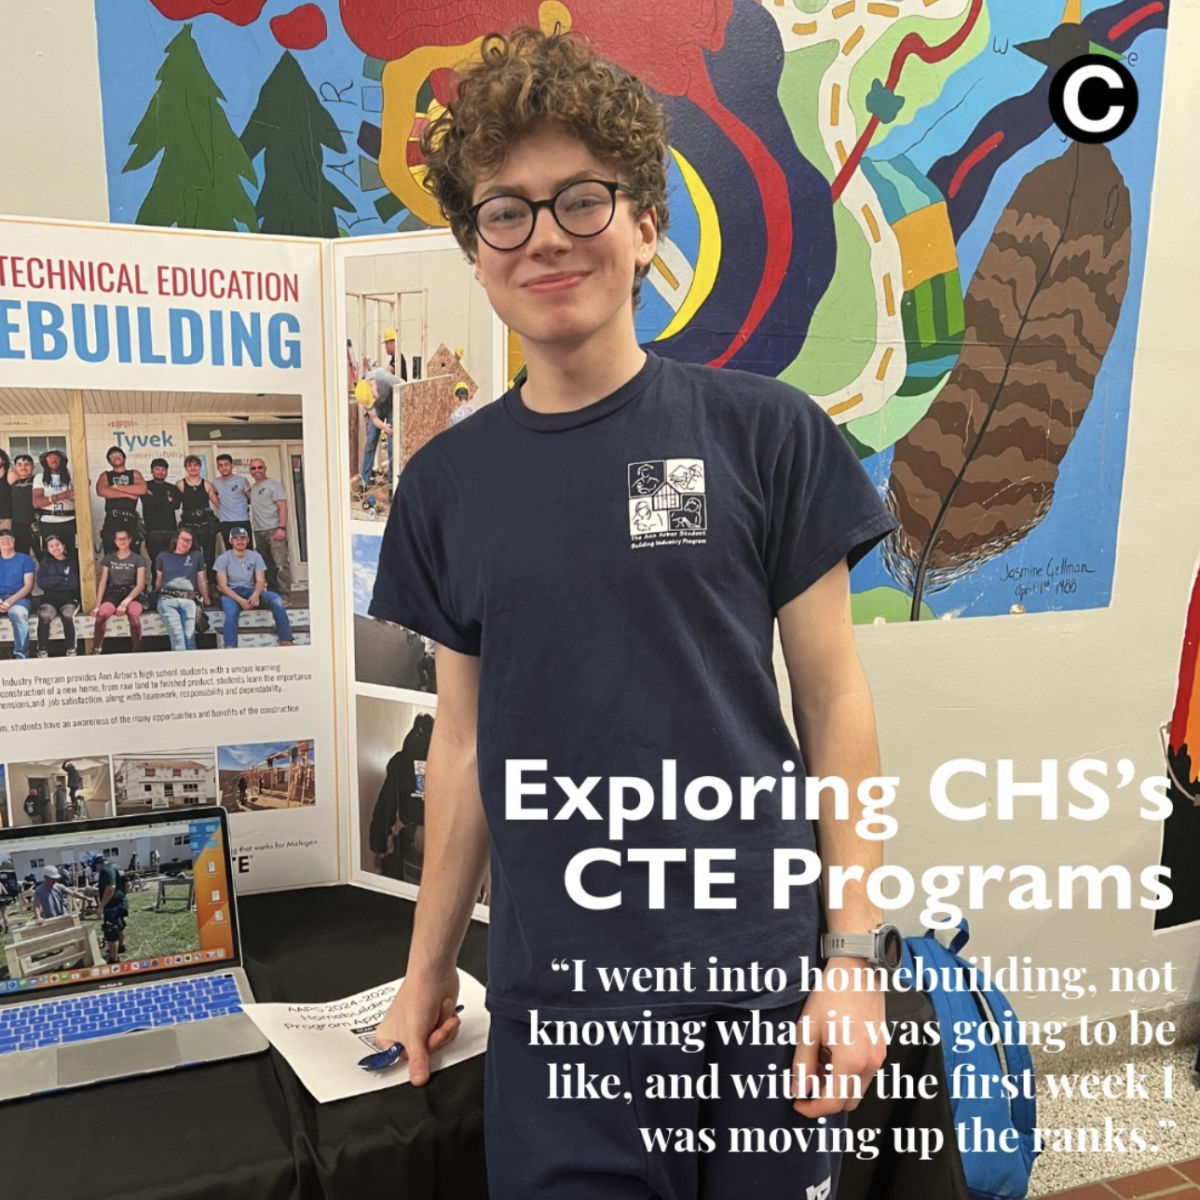 CHSs CTE Program Emphasizes Real-World Oppurtunities